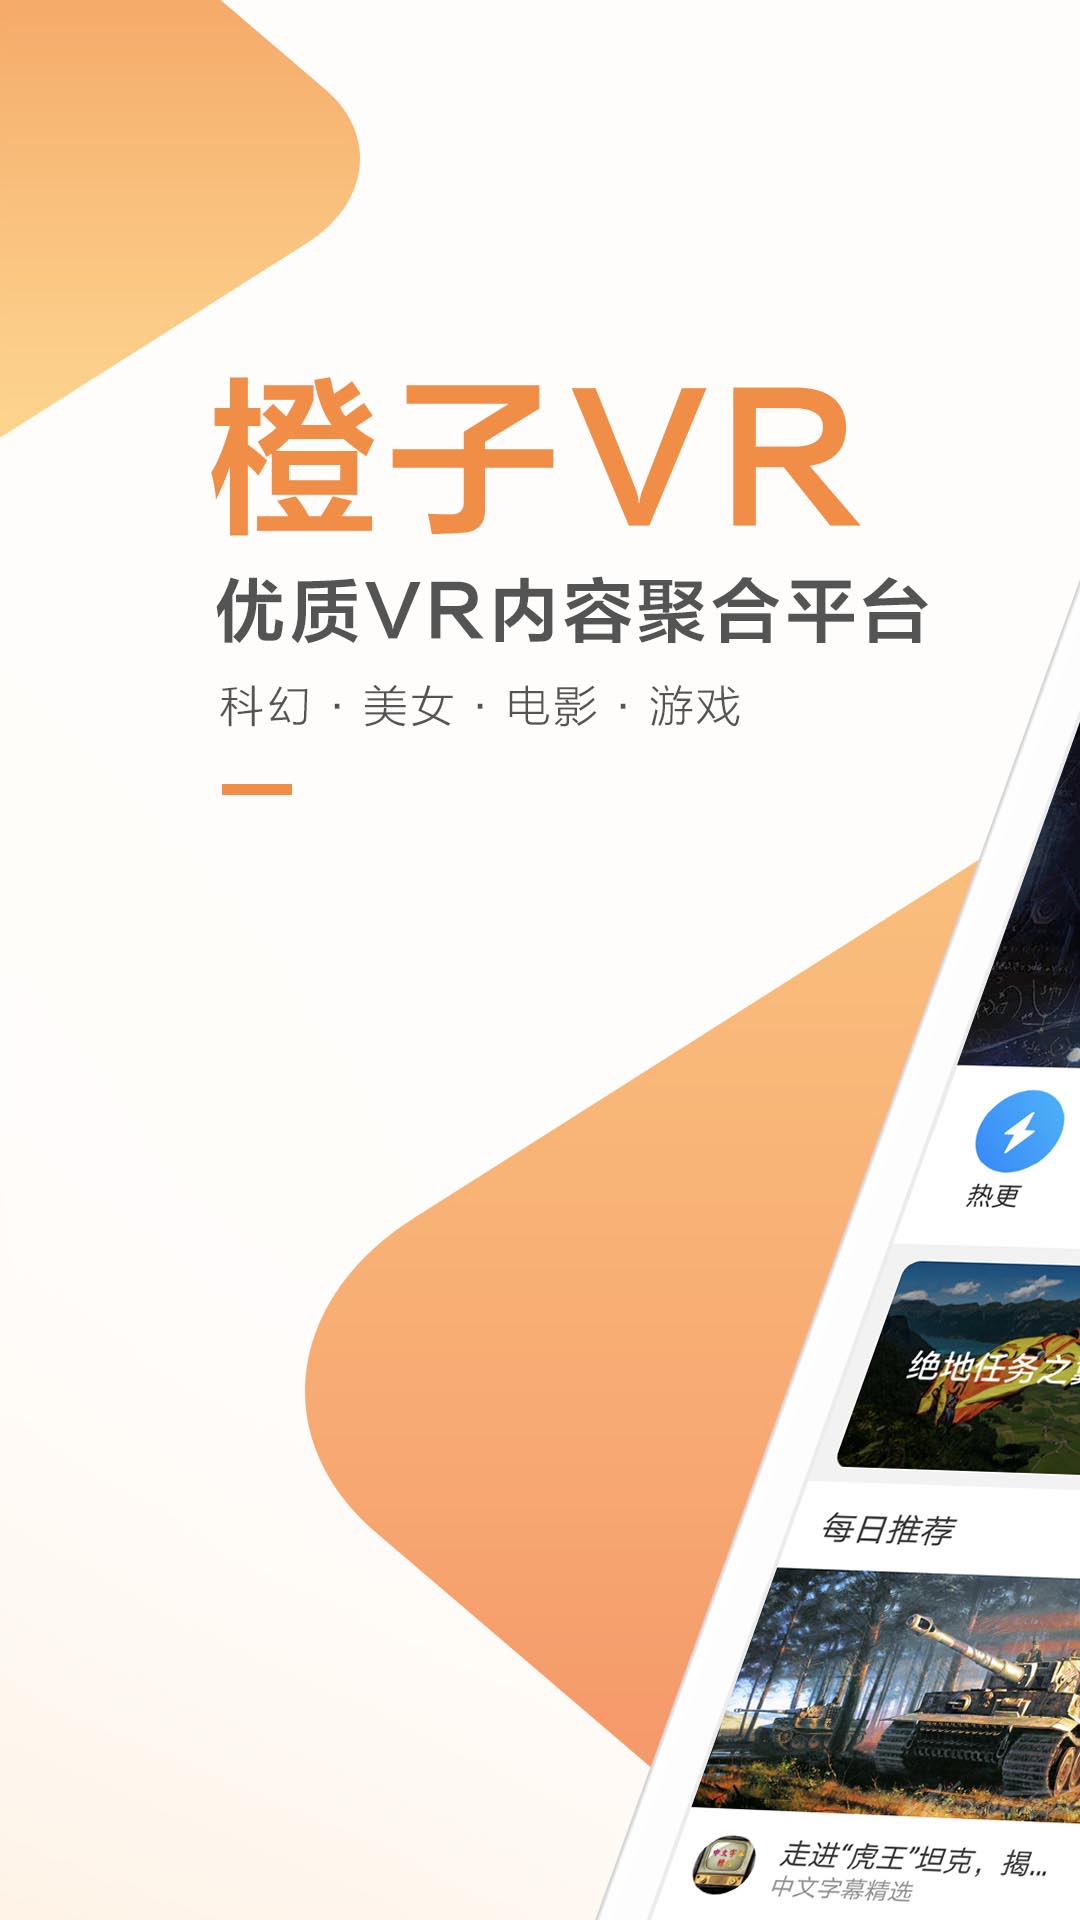 解锁好玩的VR内容APP—橙子VR